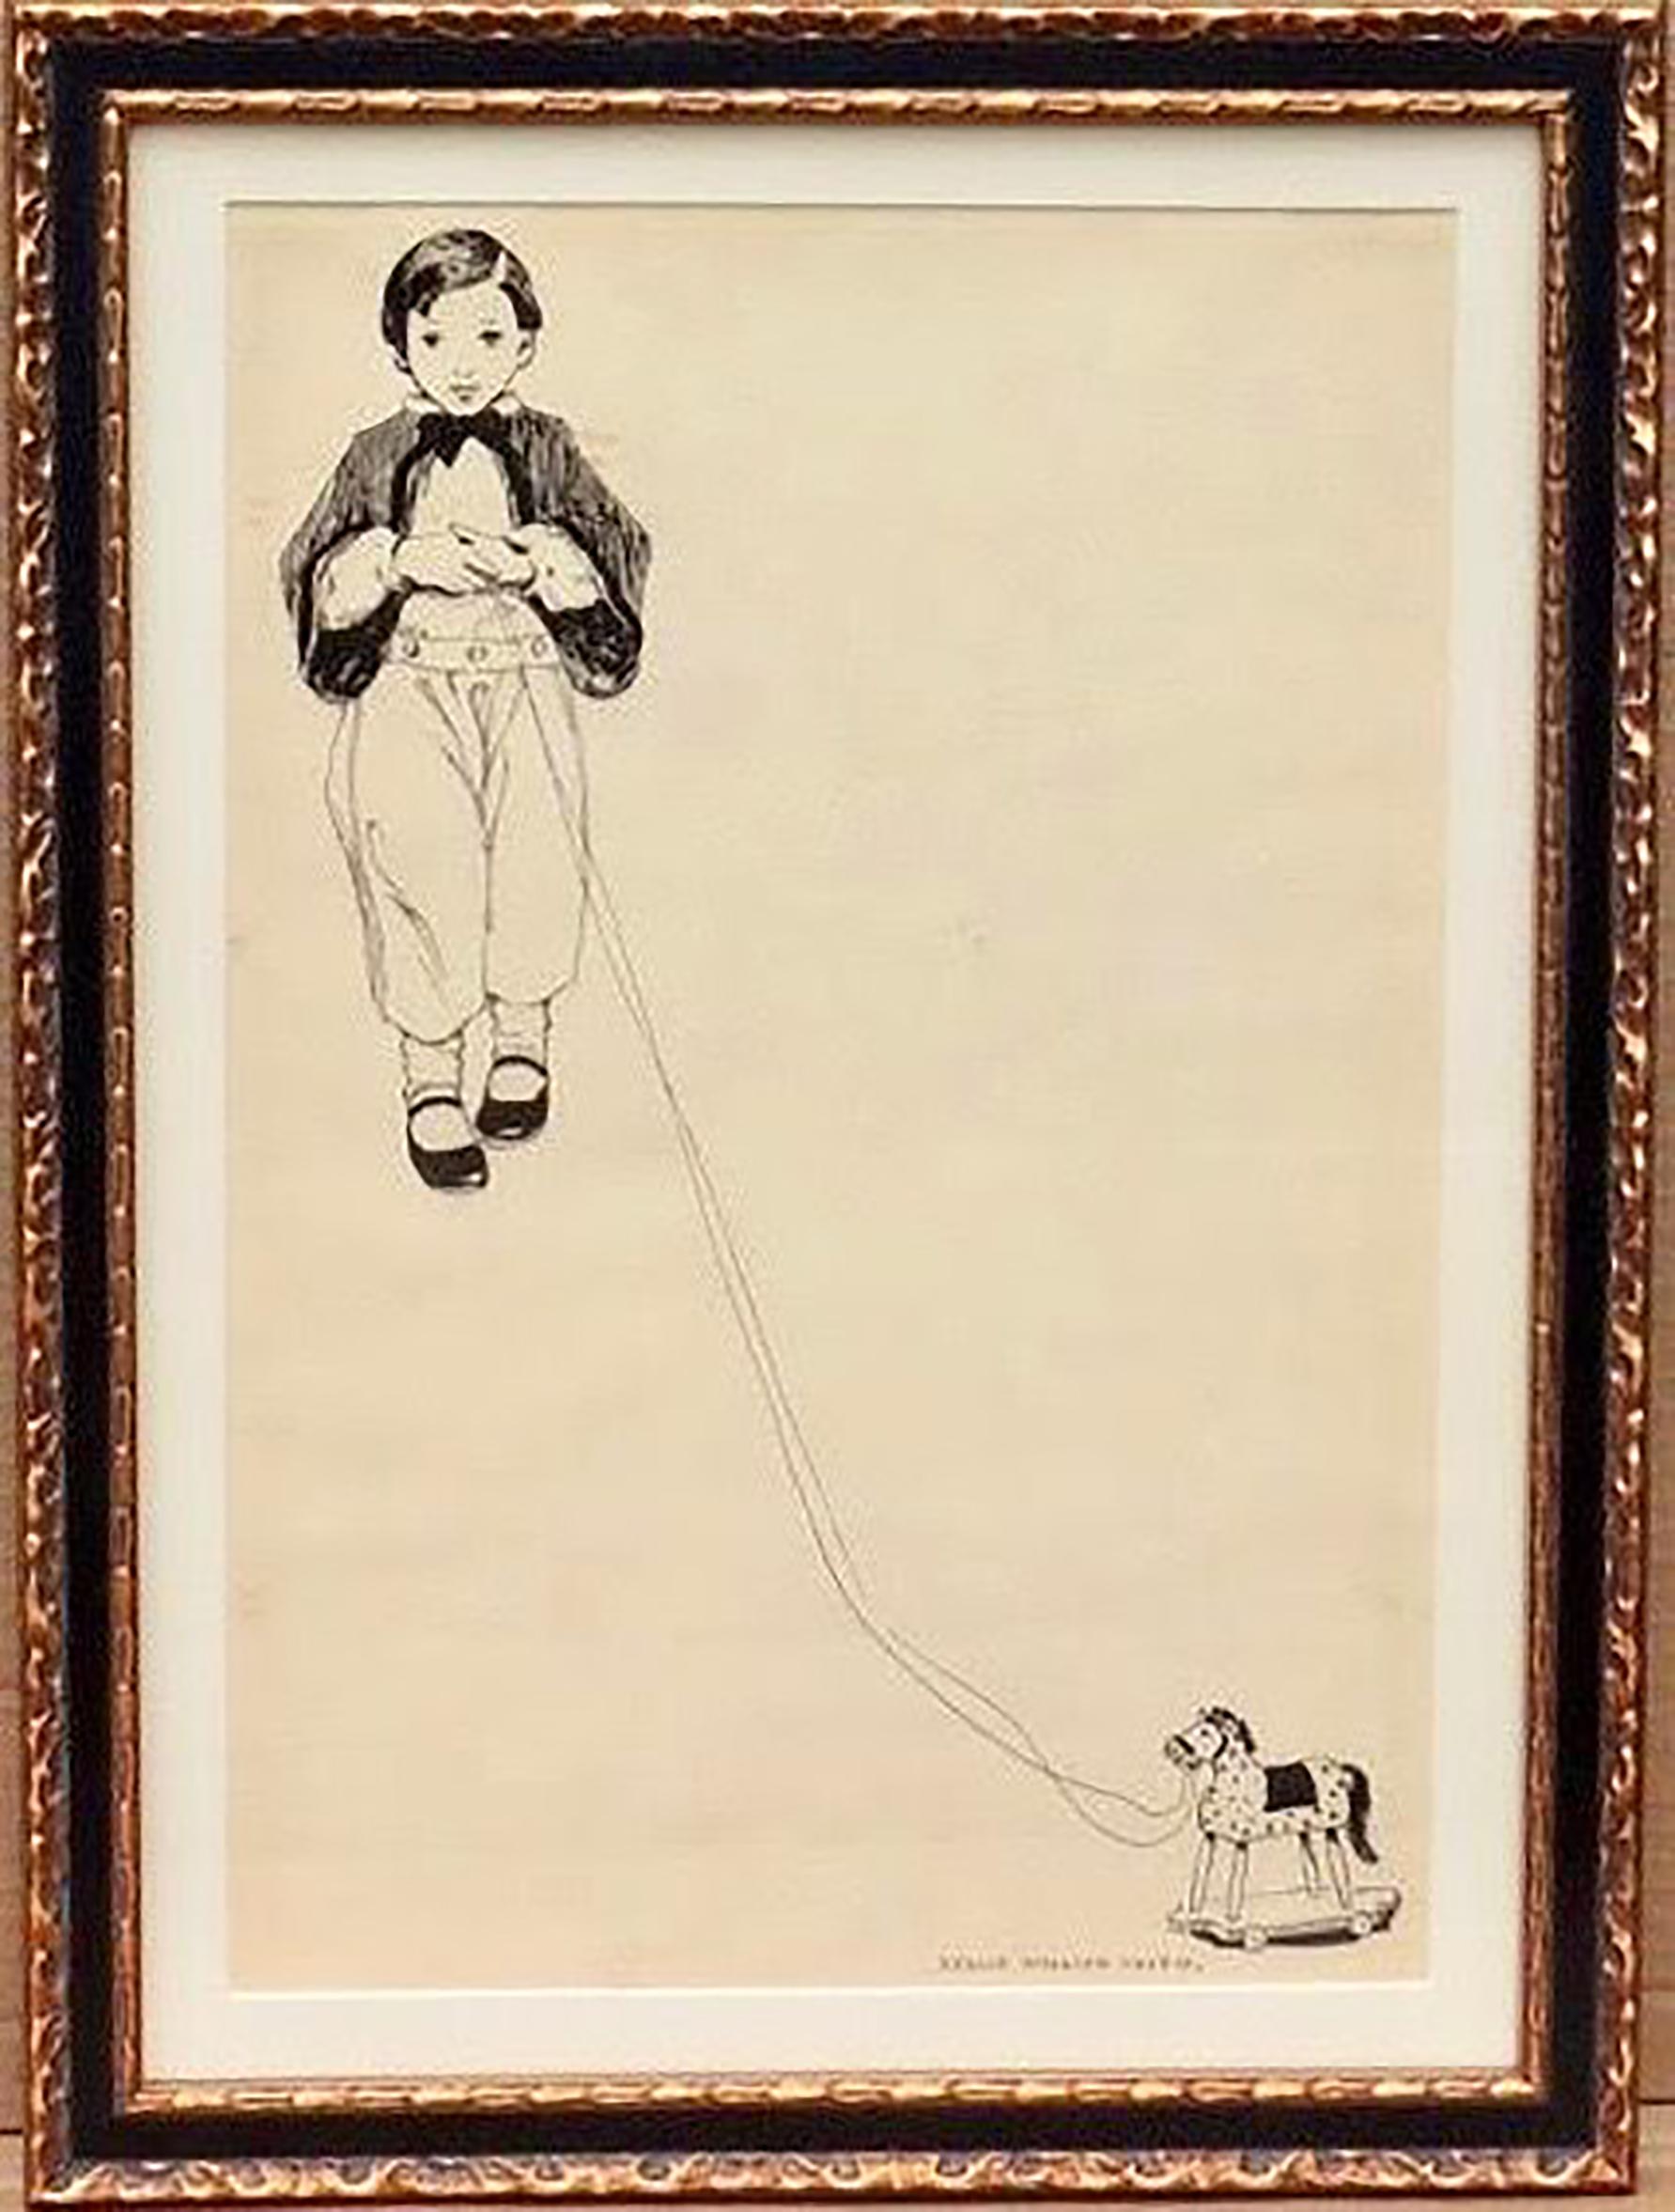 Boy with Pull Toy - Art by Jessie Willcox Smith